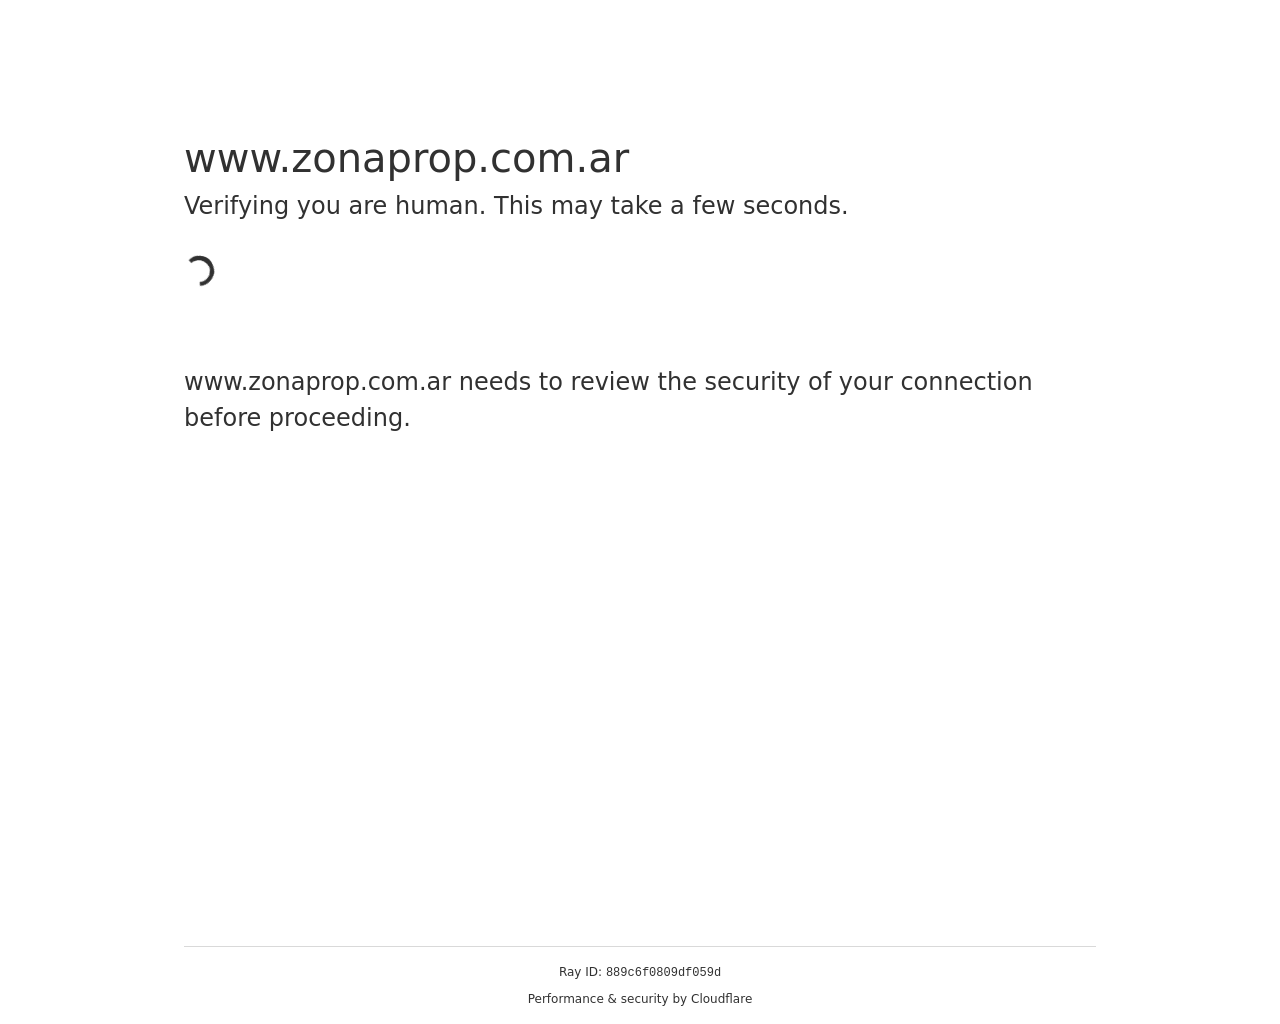 zonaprop.com.ar